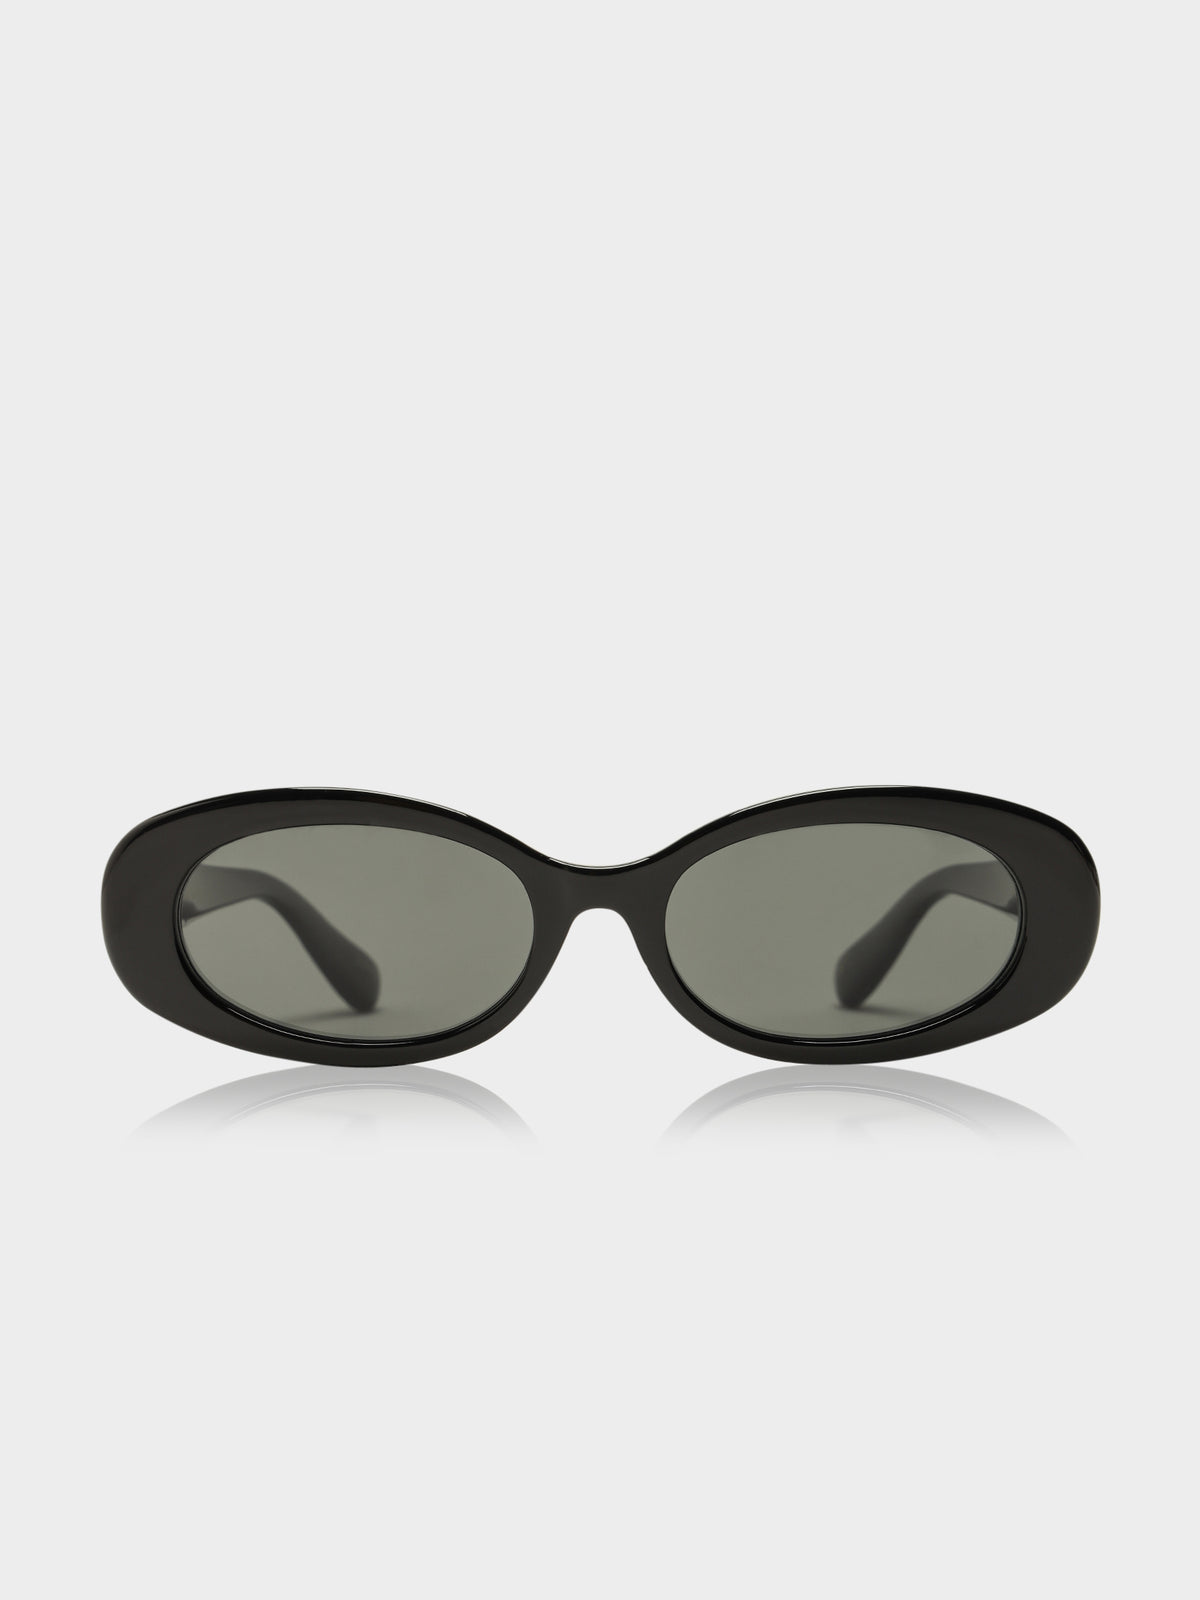 Berkley Sunglasses in Black